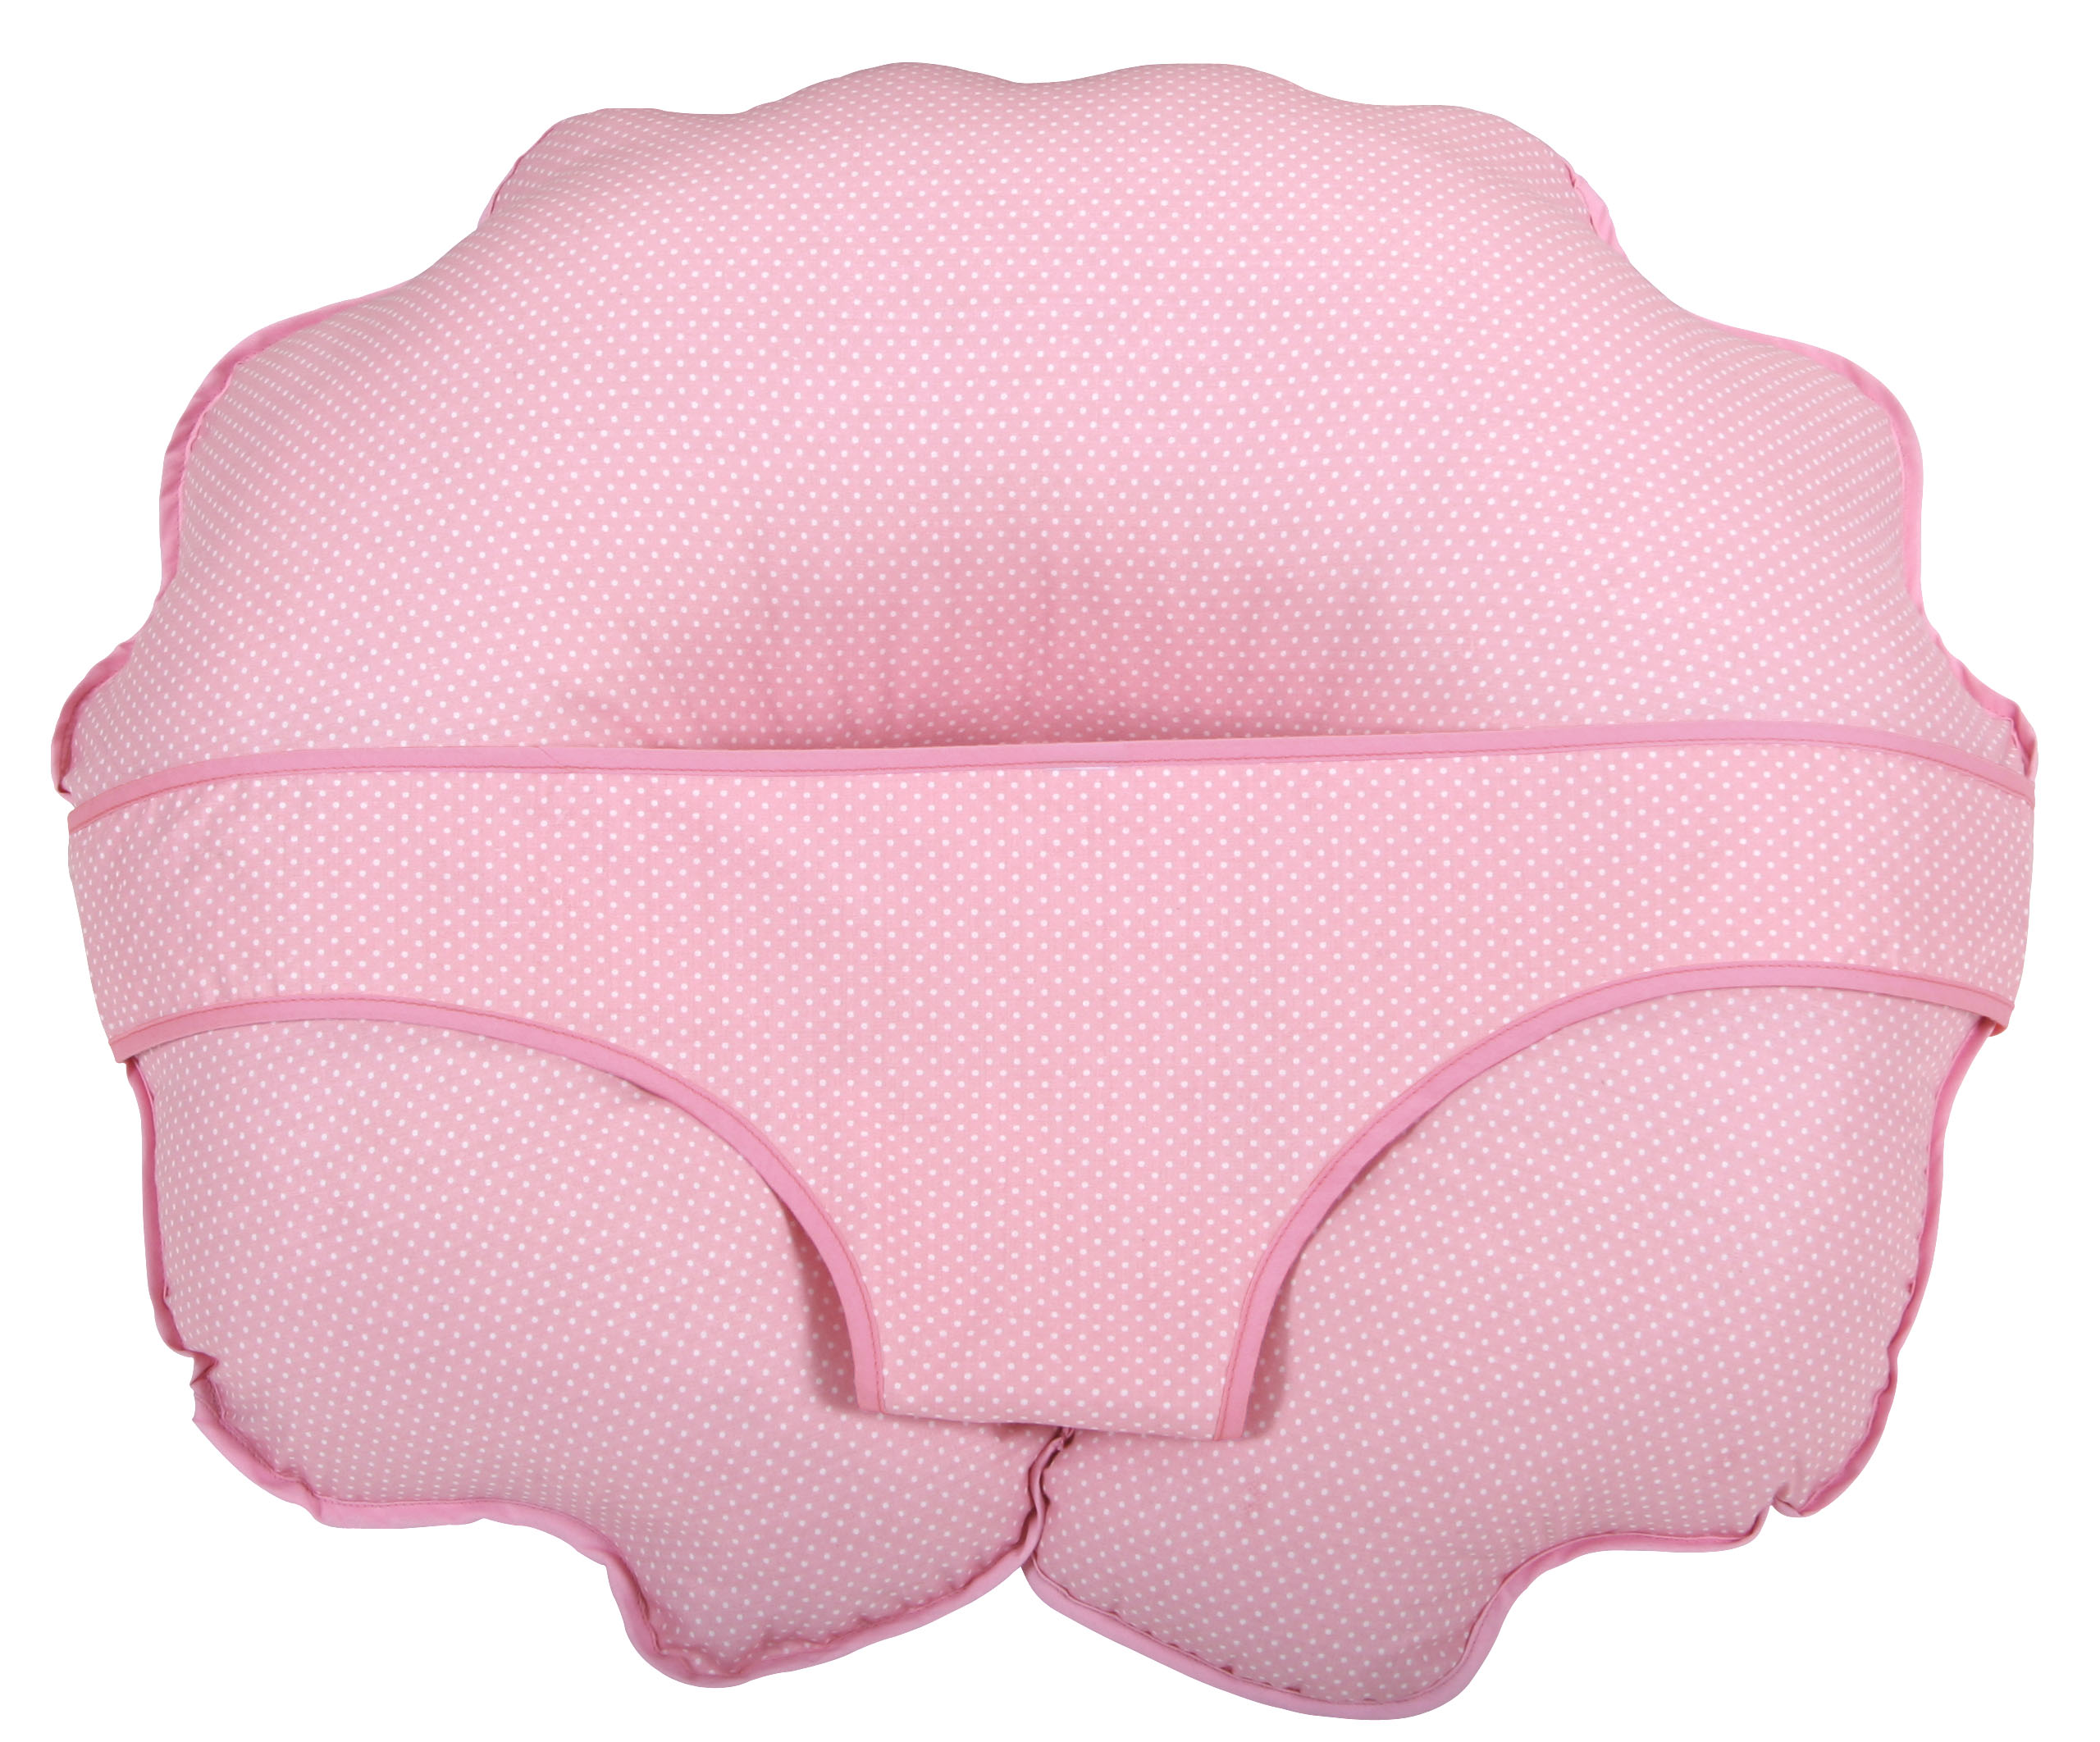 Leachco Cuddle-U Basic Pillow & More, Pink Pin Dot - image 1 of 2